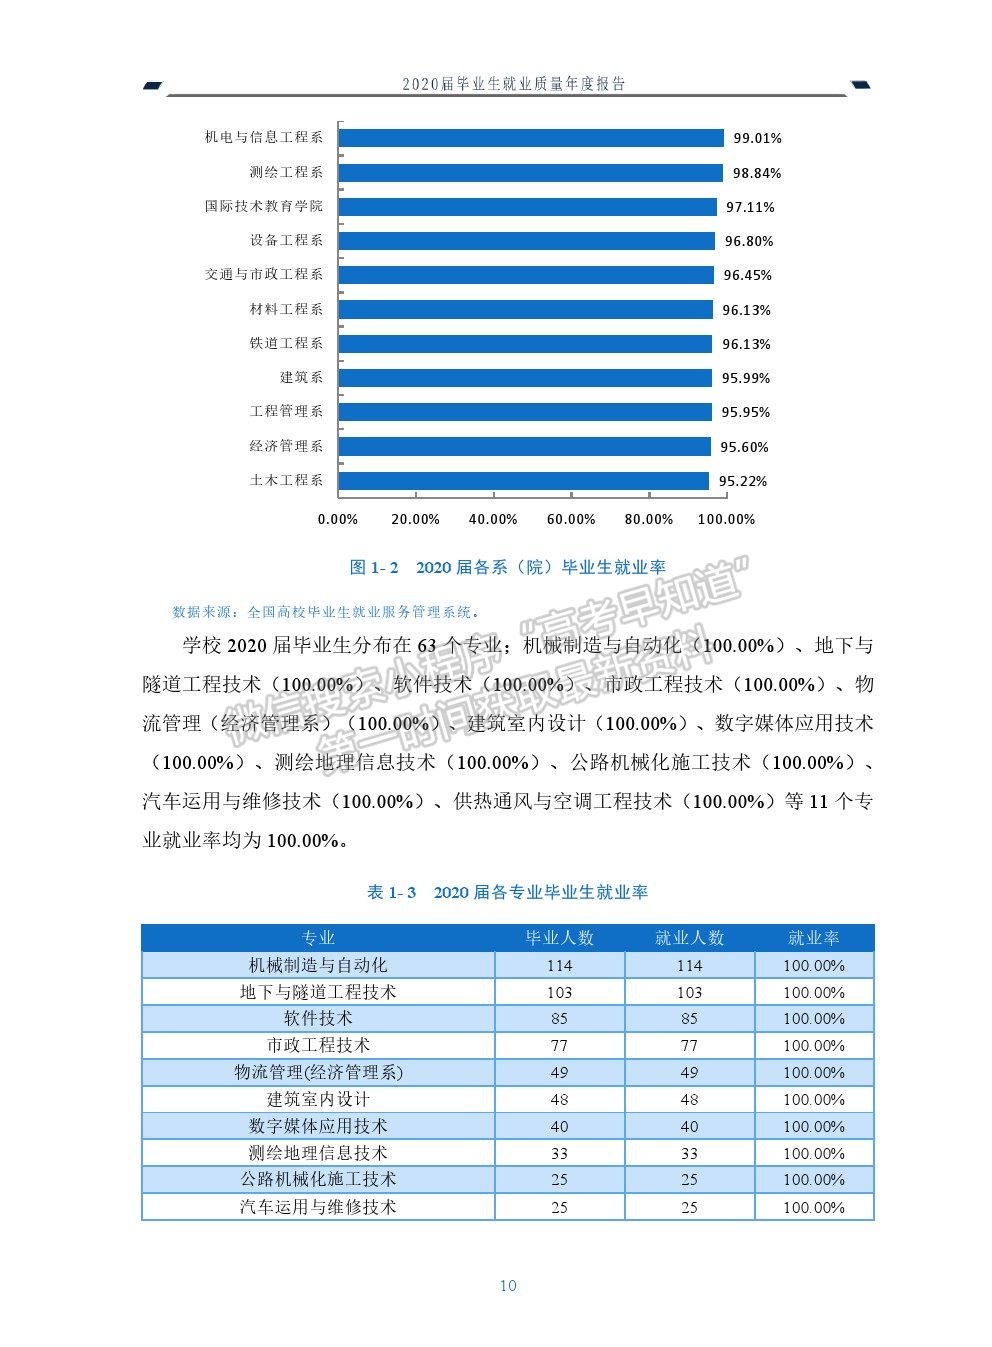 四川建筑职业技术学院2020届毕业生就业质量年度报告